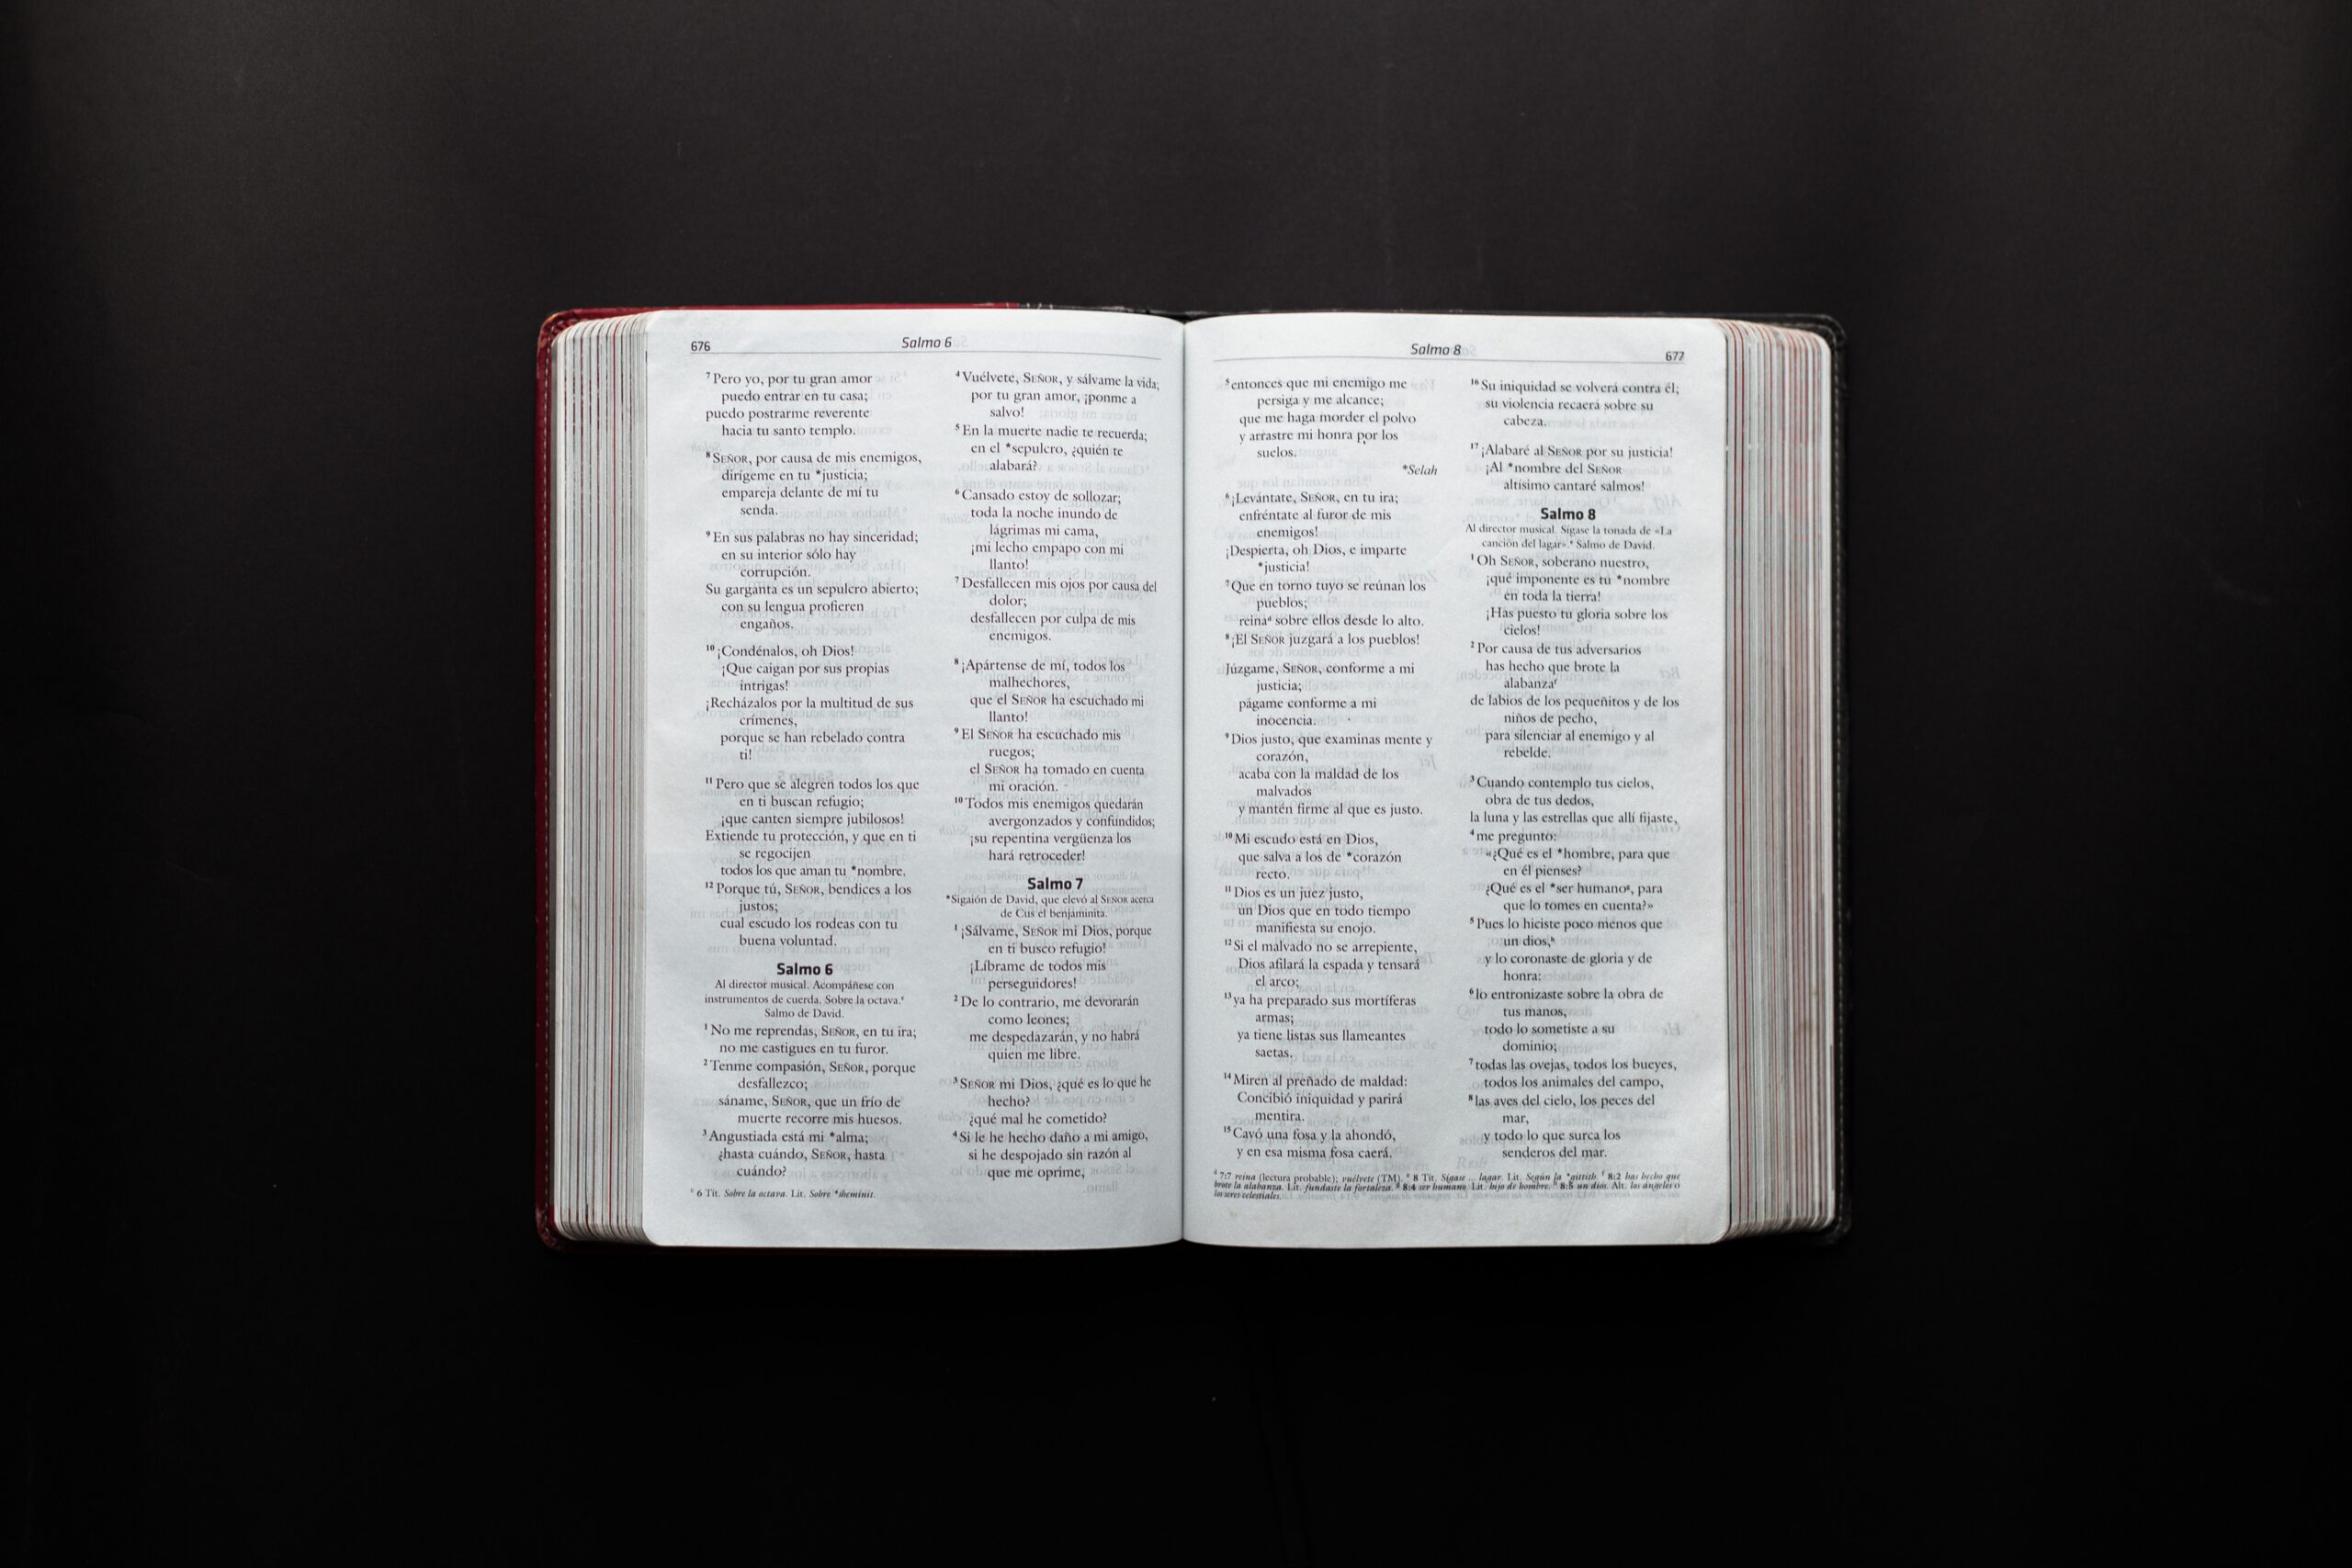 Frases bíblicas para reflexionar sobre la vida En un mundo lleno de tanta confusión, nuestra única guía es la palabra de Dios;